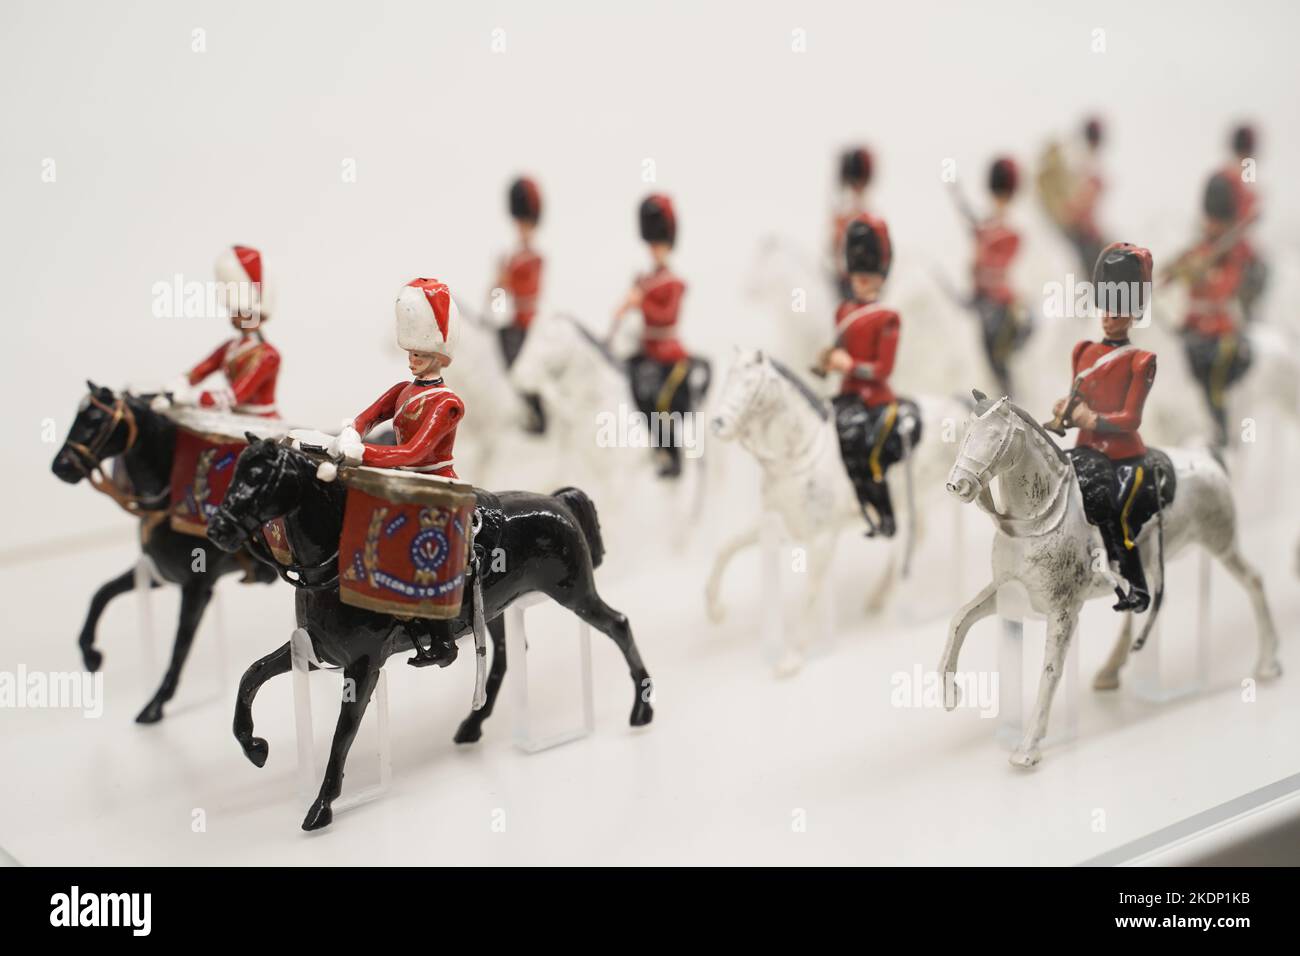 Objets de collection de soldats de jouets vintage exposés, fabriqués en Grande-Bretagne, populaires au début de 1900 autour de la période de la guerre mondiale i et ii Banque D'Images